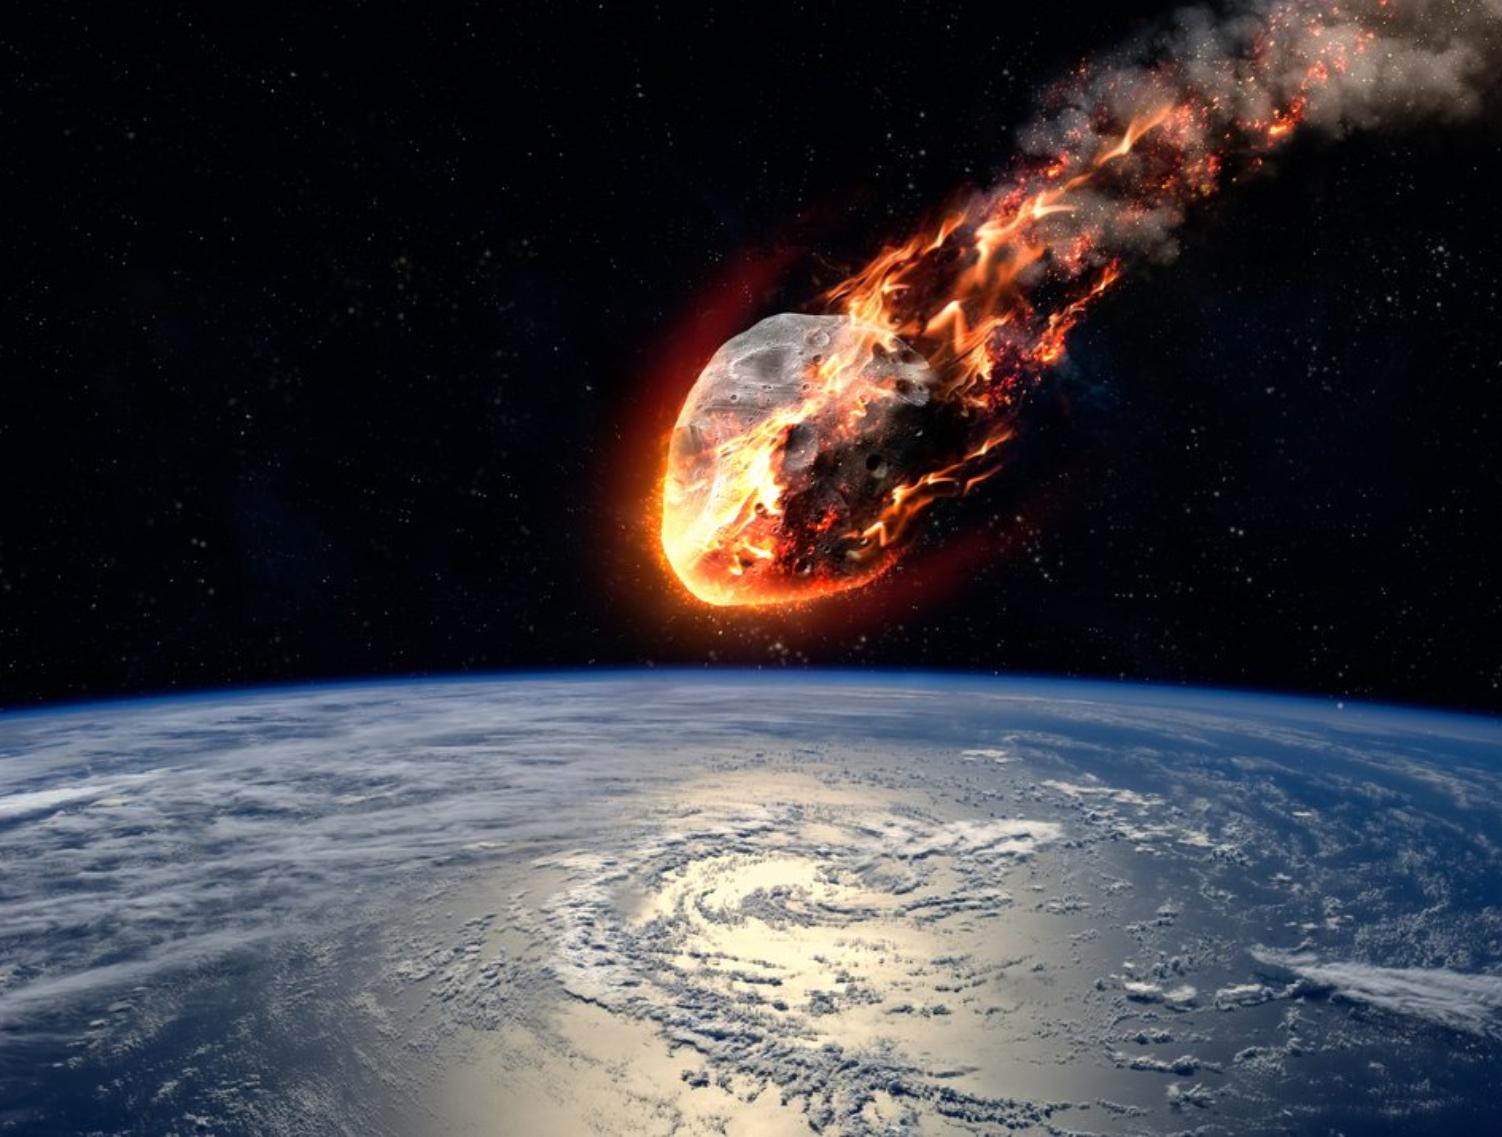 Κομήτης από την εποχή των Νεάντερταλ θα πλησιάσει την γη  – Θα είναι ορατός με γυμνό μάτι